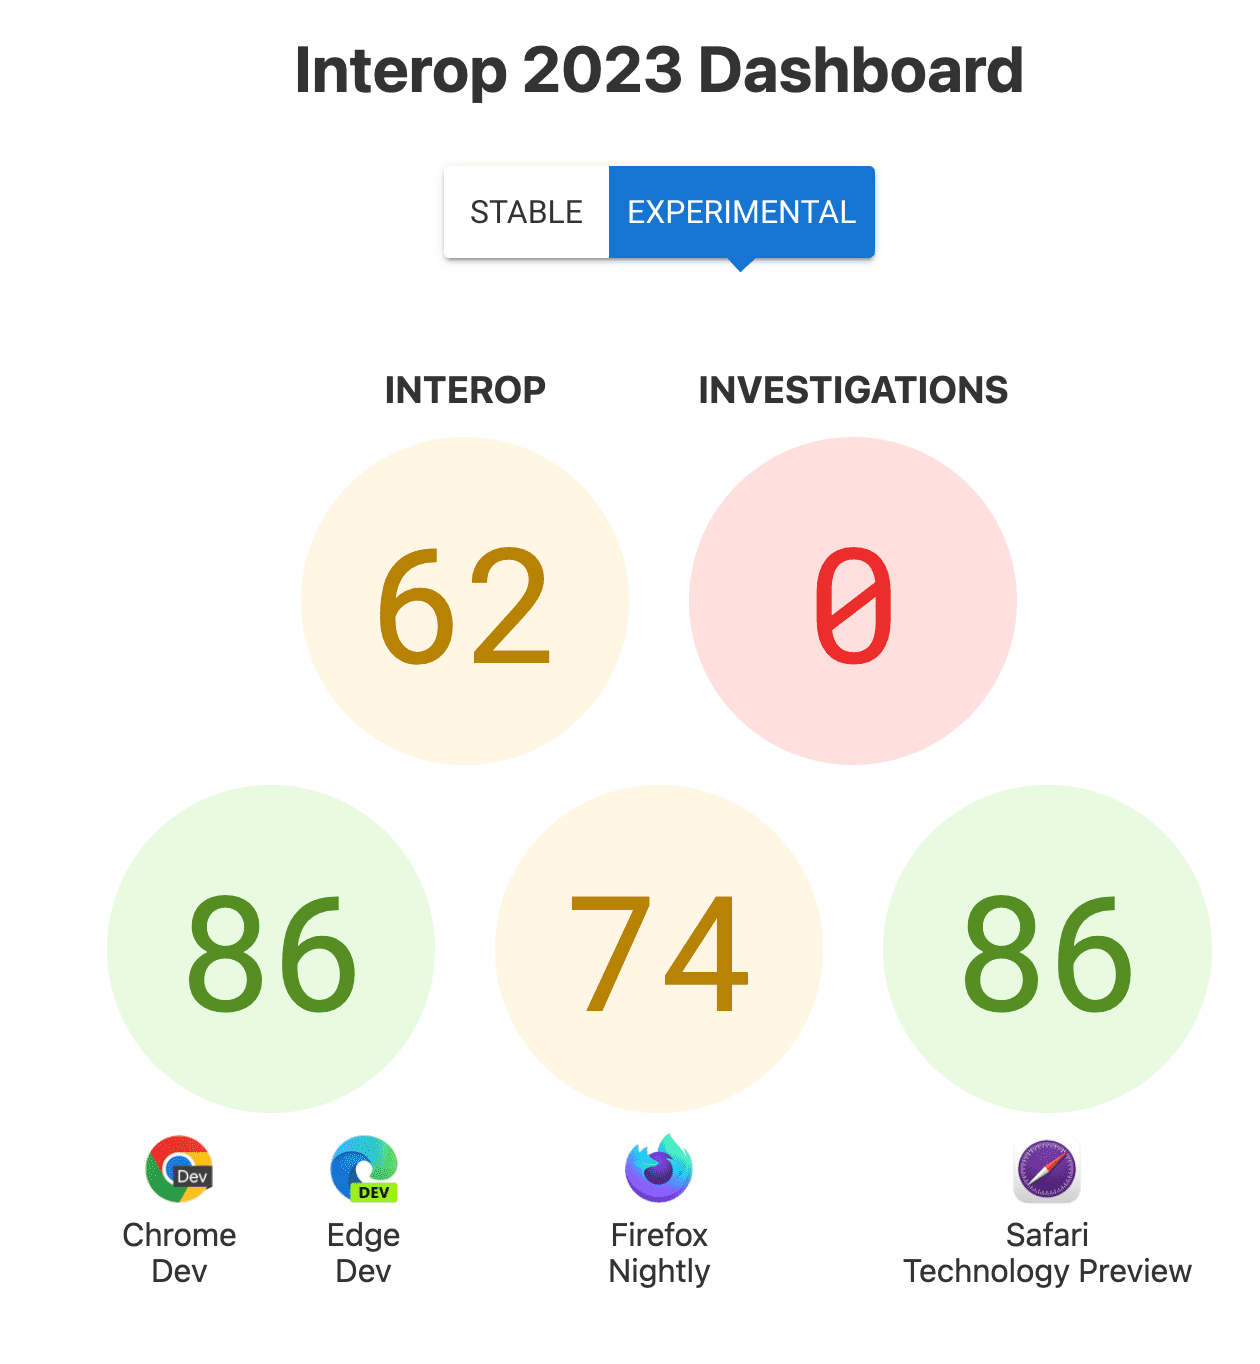 전체 Interop 점수: 62점, 조사: 0점 및 브라우저당 점수 - Chrome 및 Edge는 86점, Firefox는 74점, Safari 기술 미리보기는 86점입니다.